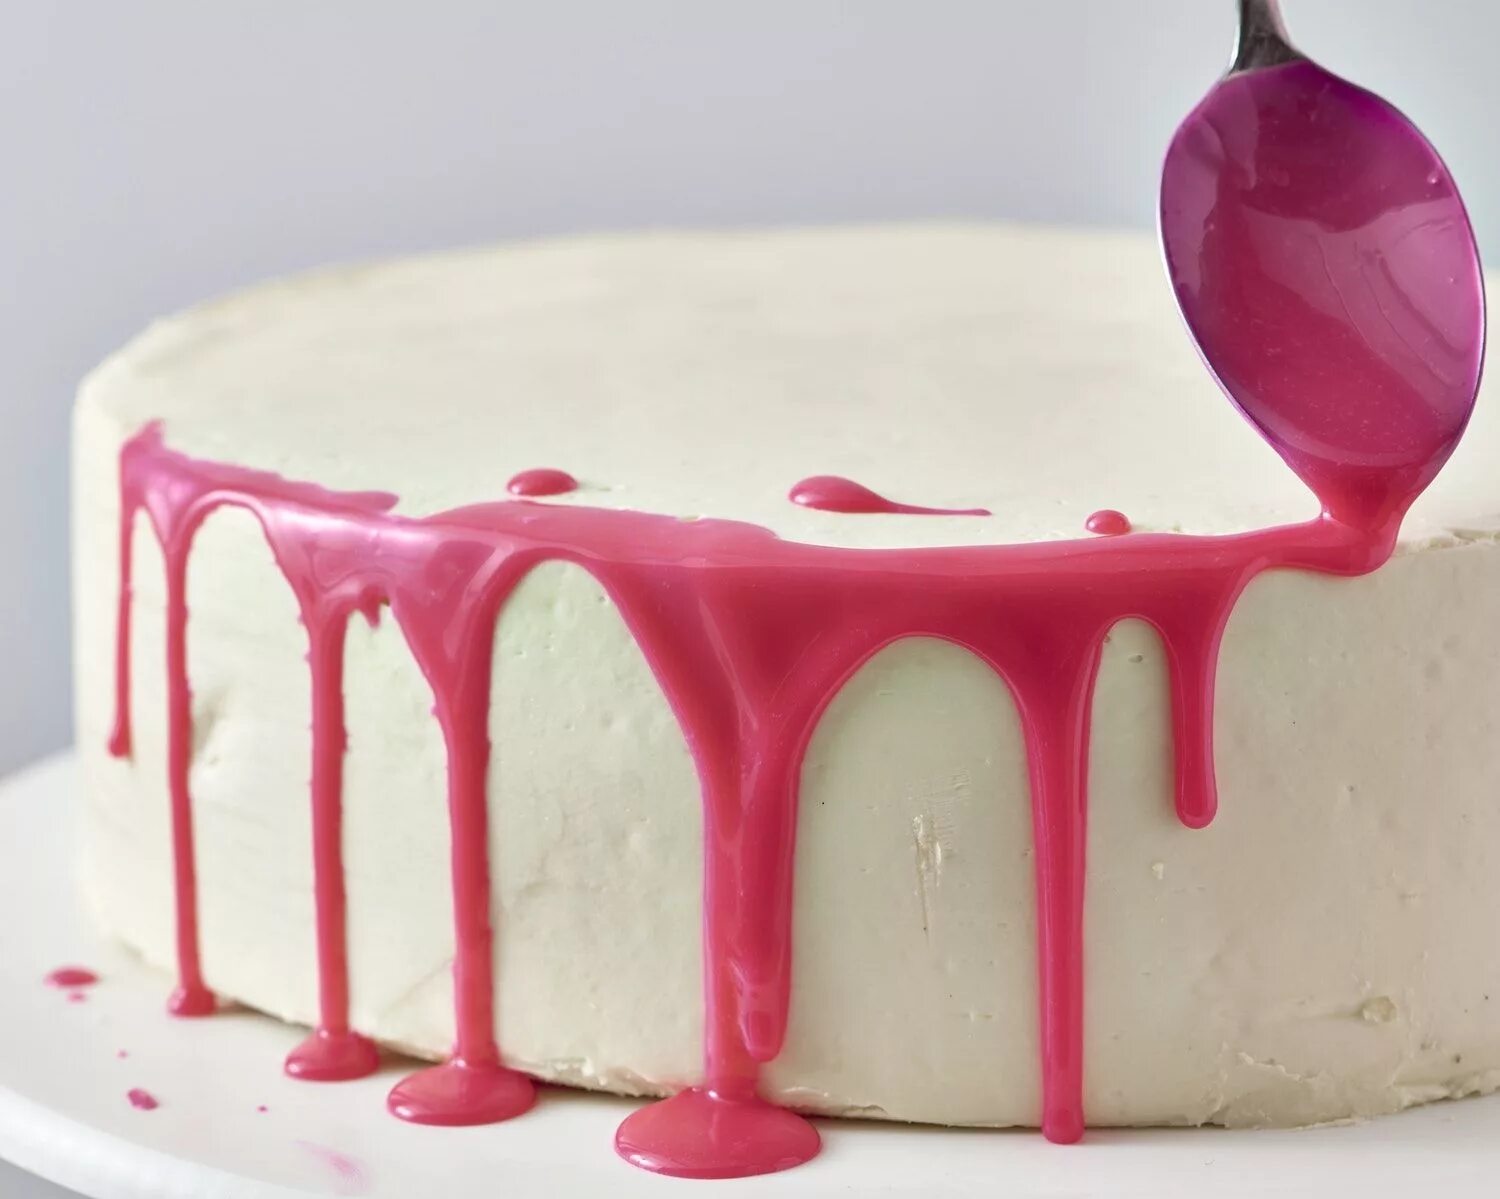 Cake icings. Глазурь для торта. Торт с сахарной глазурью. Украшение торта разноцветной глазурью. Торт с розовой глазурью.